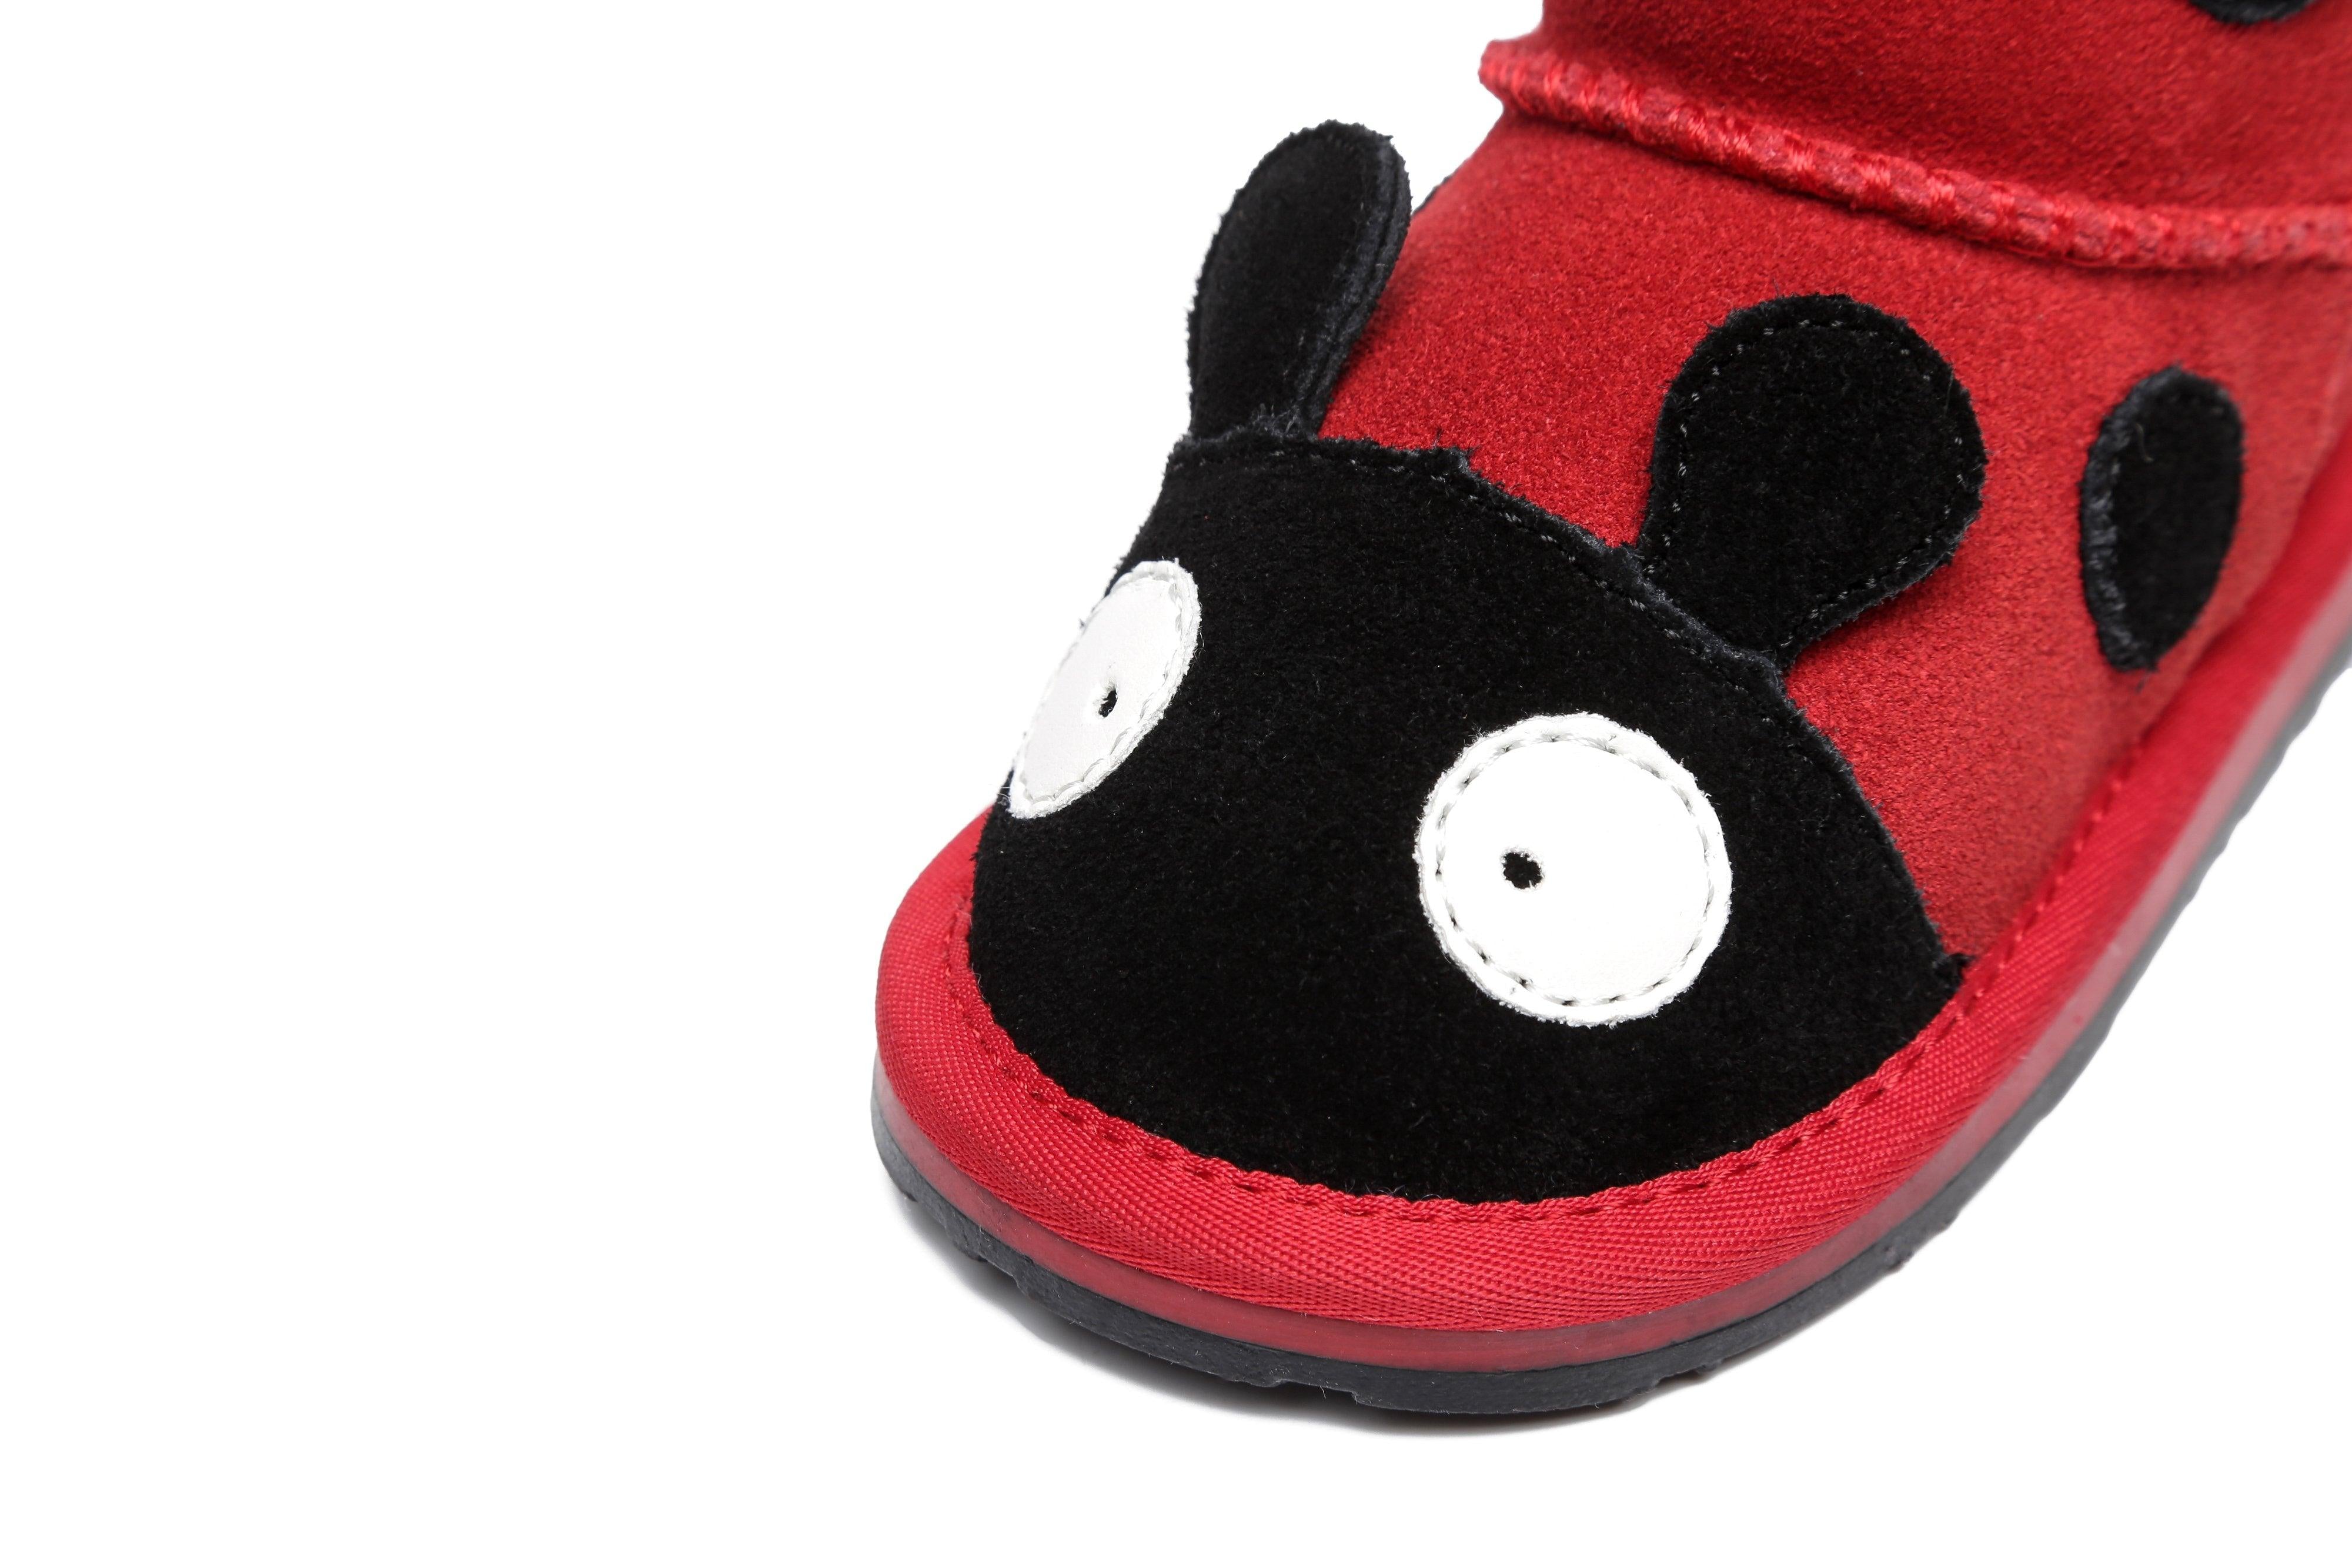 Ladybug Sheepskin Boots Toddler - Uggoutlet